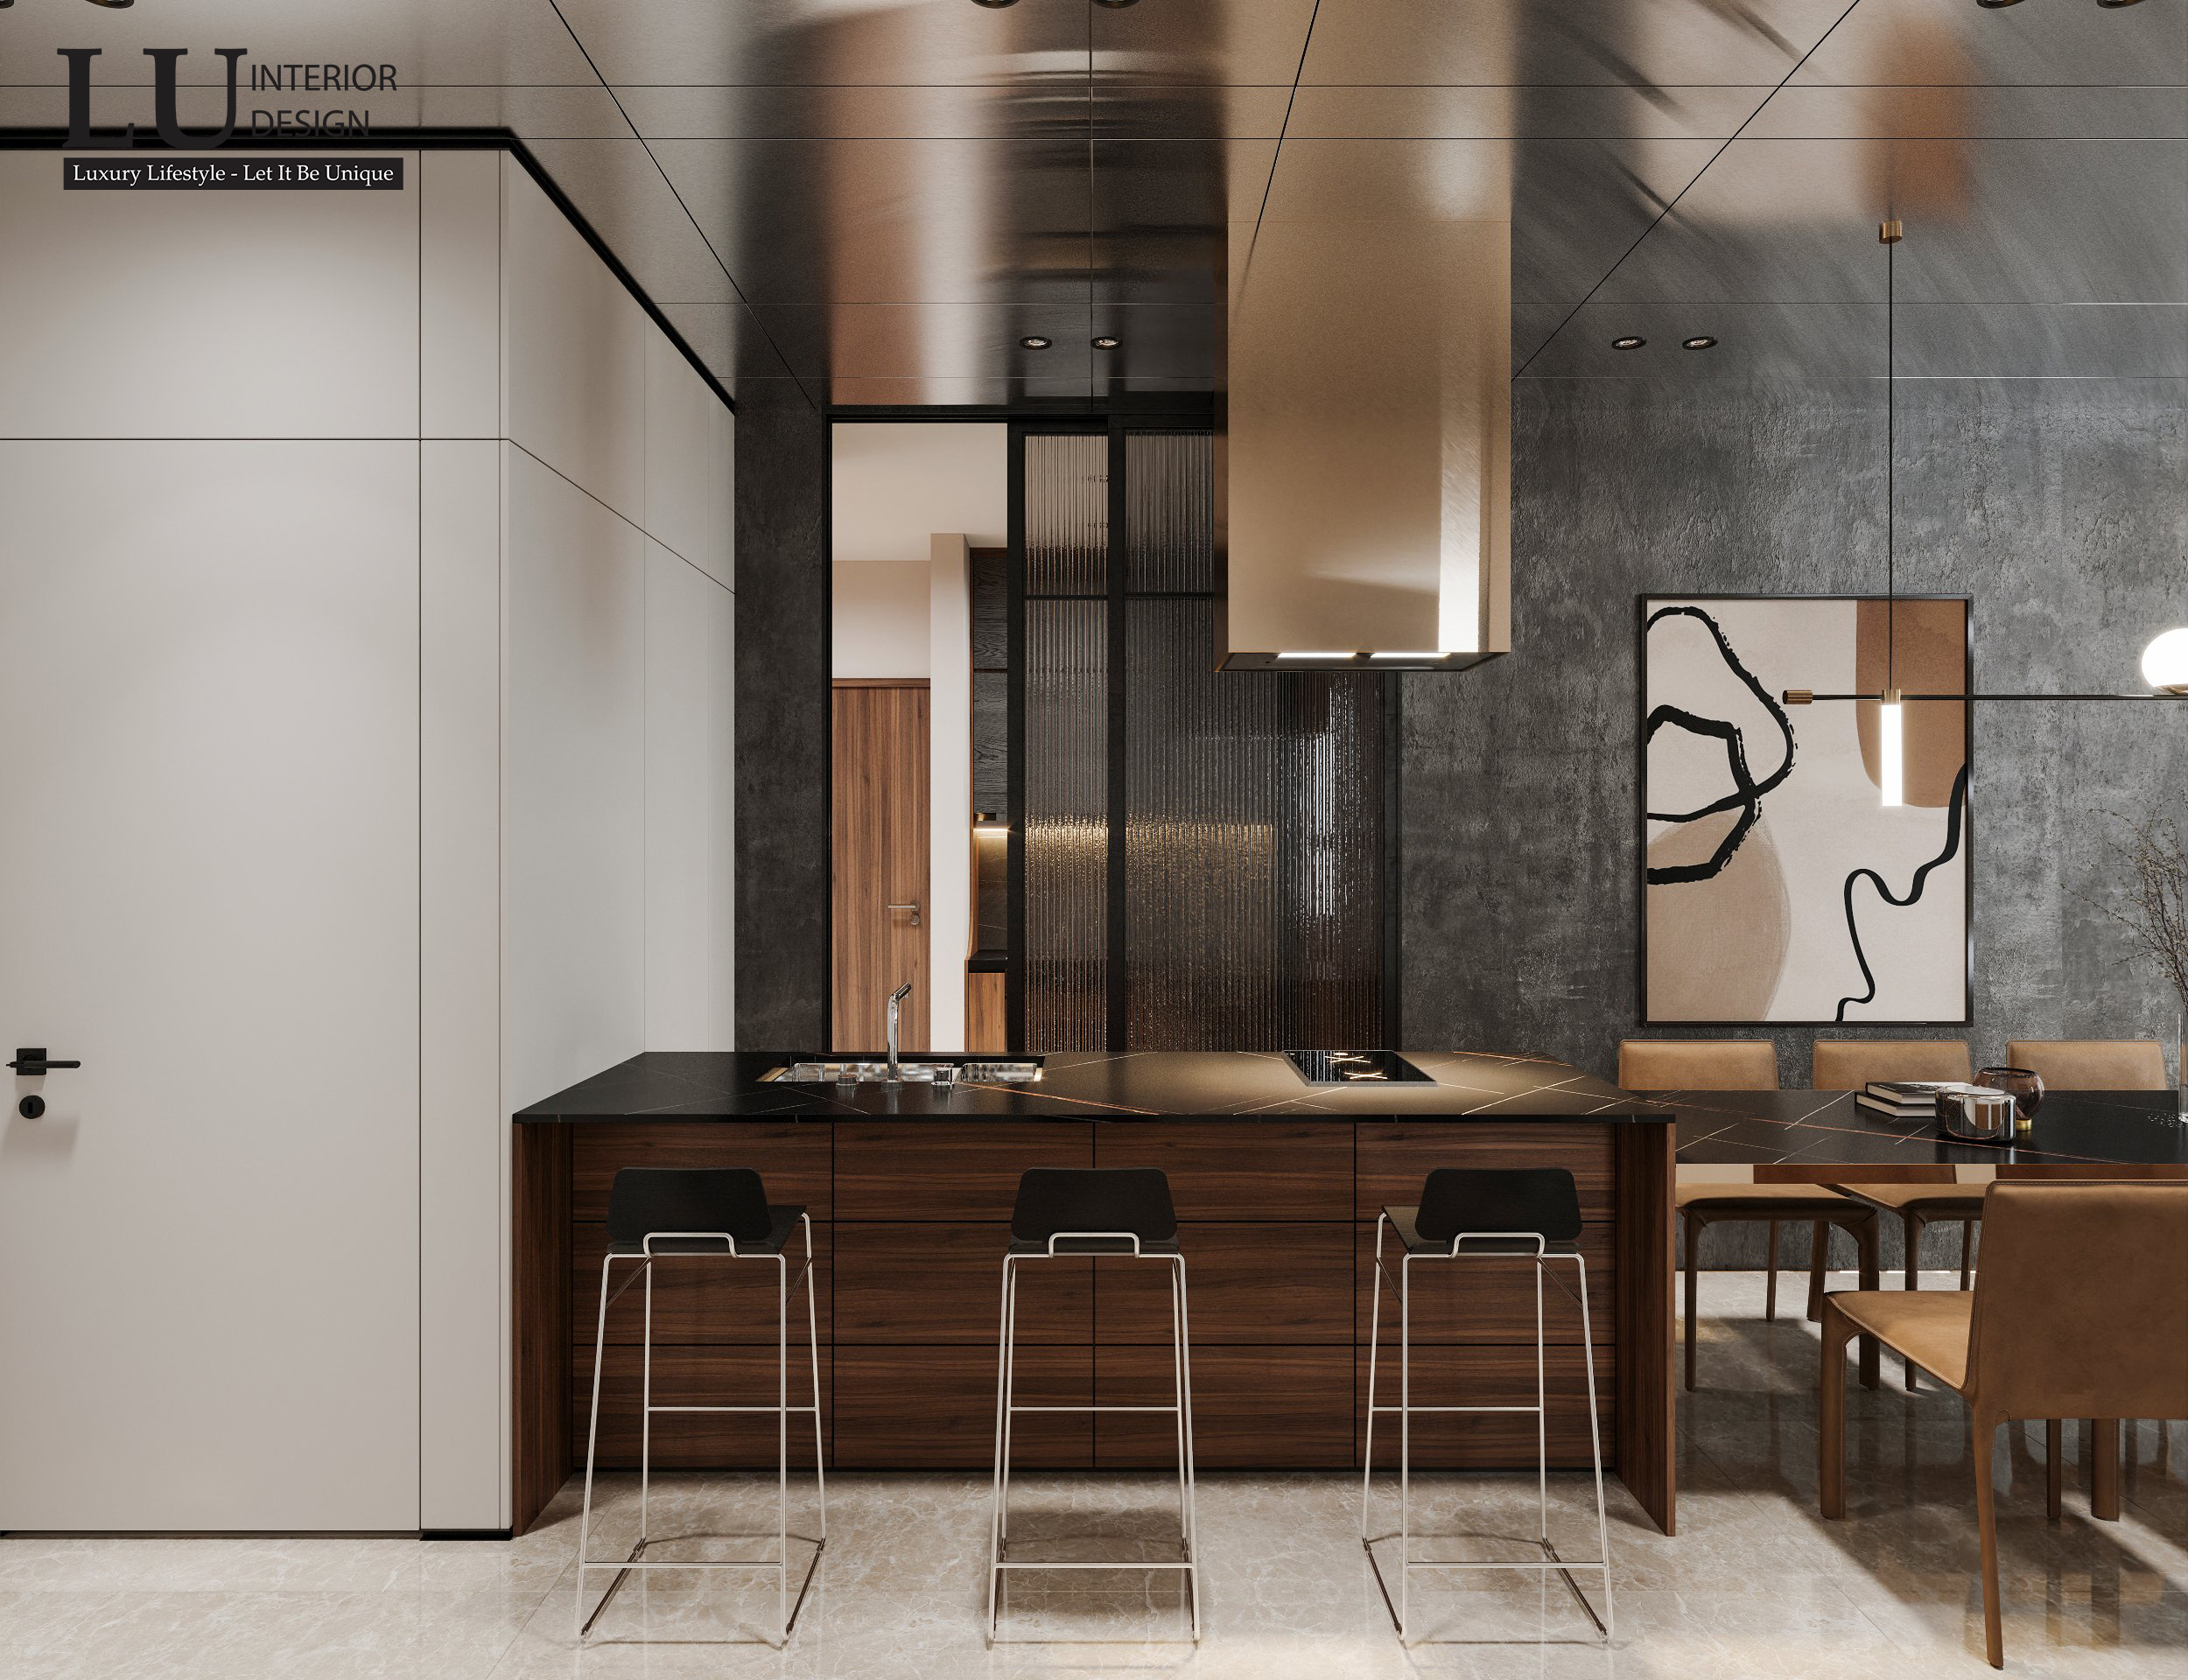 Mẫu thiết kế phòng bếp đẹp hiện đại chữ L giúp tận dụng triệt để góc chết của căn phòng | LU Design thực hiện.